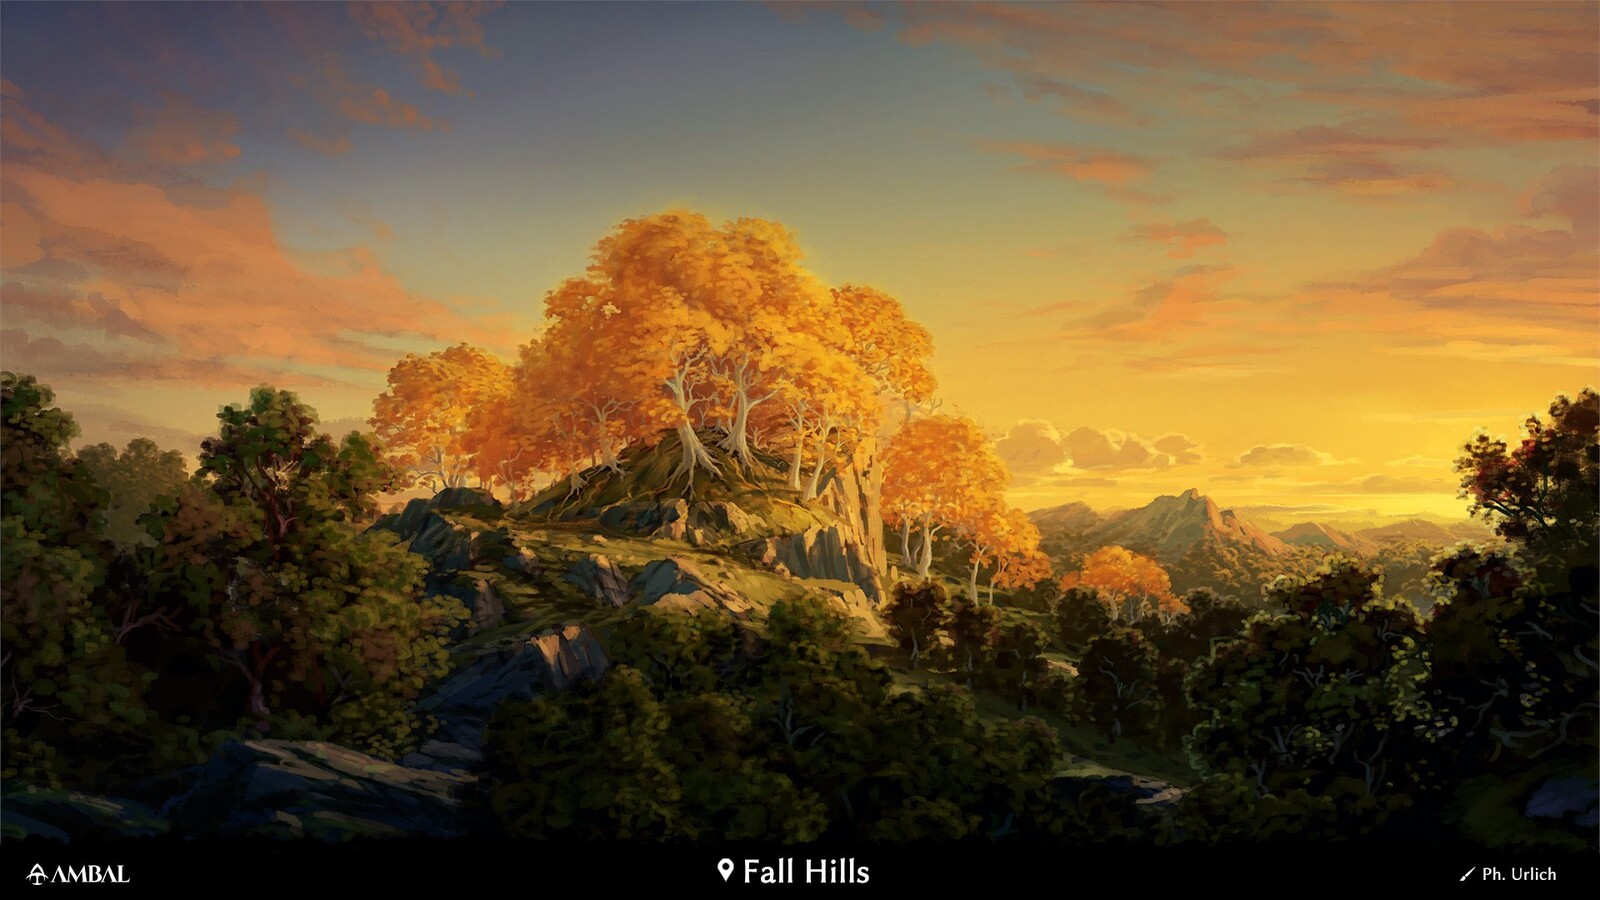 Fall Hills